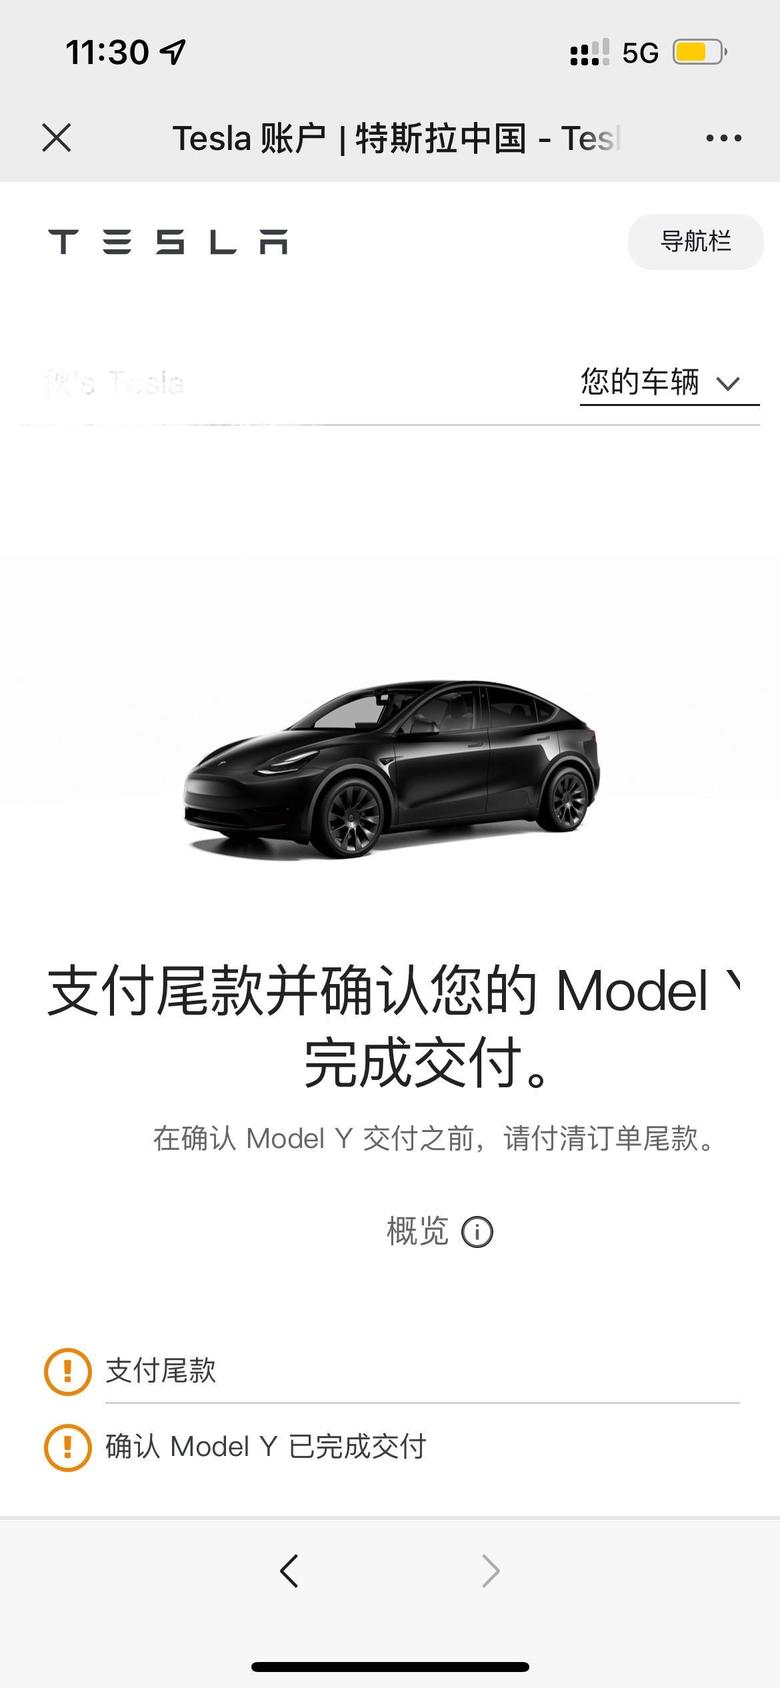 model y 8.31订车20号上午11点订单状态更新历时50天终于上岸了?看来上海也进入190订单状态了